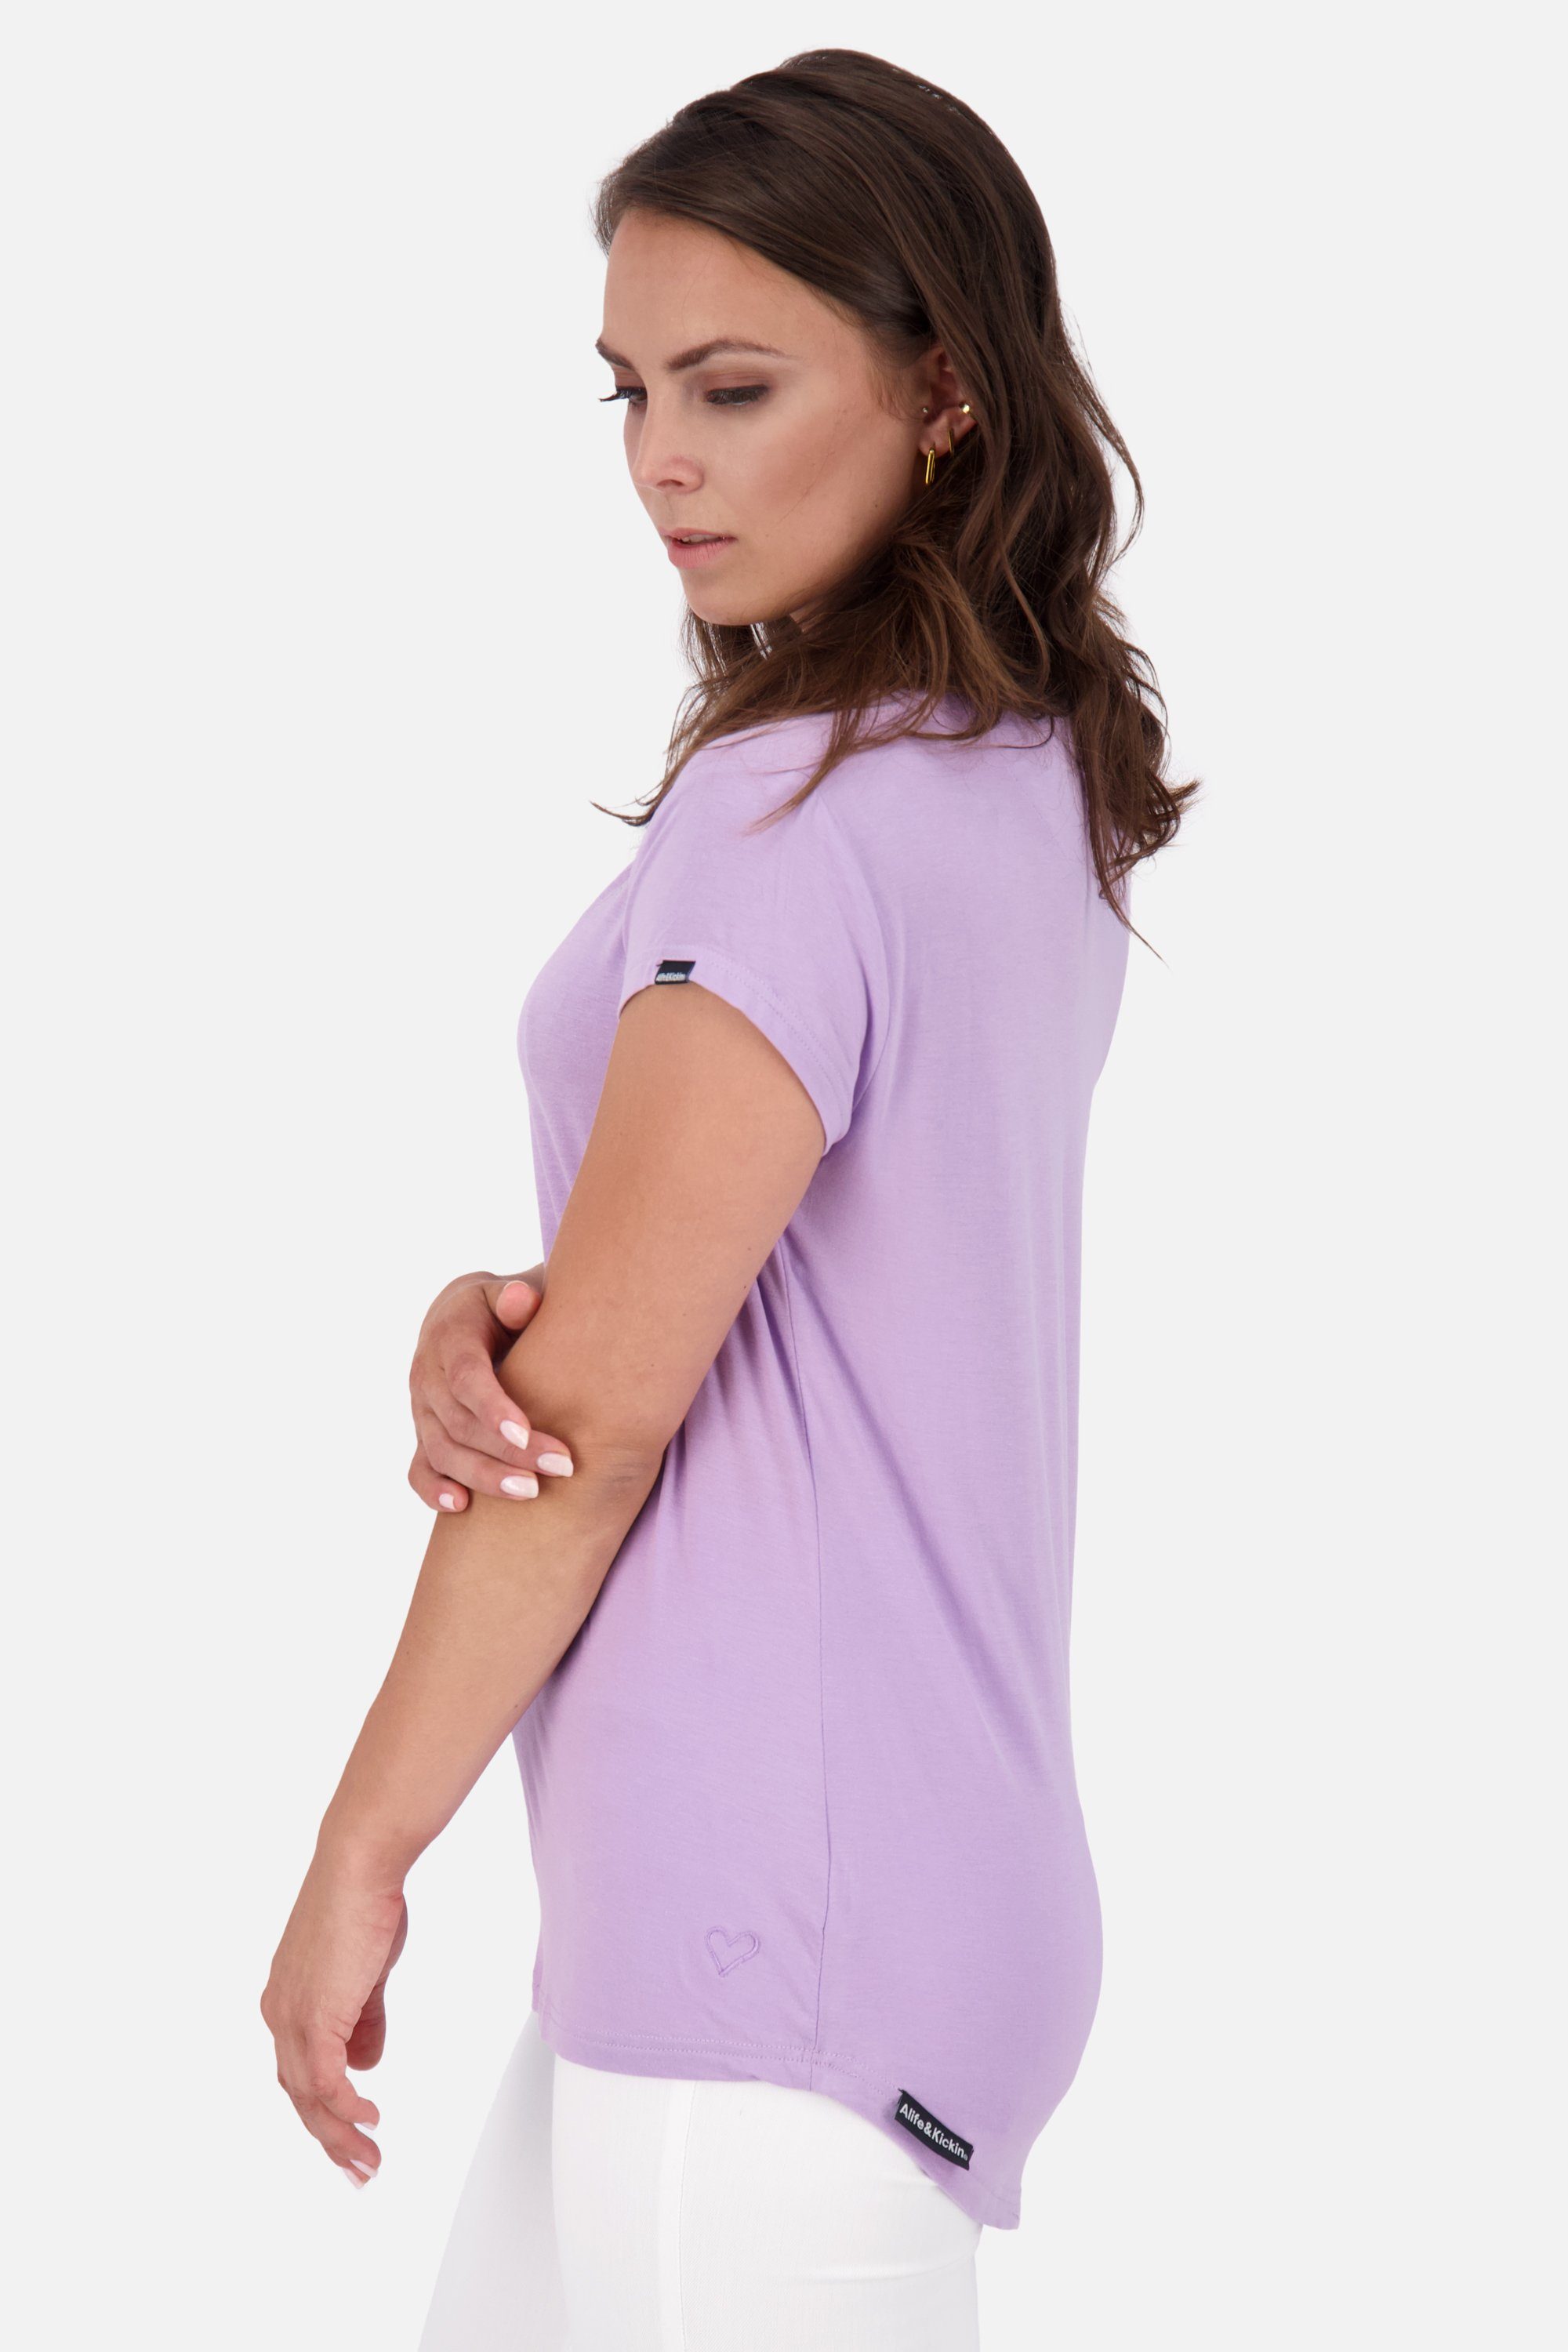 Shirt lavender Damen A Alife Rundhalsshirt digital Shirt & MimmyAK Kickin Kurzarmshirt,